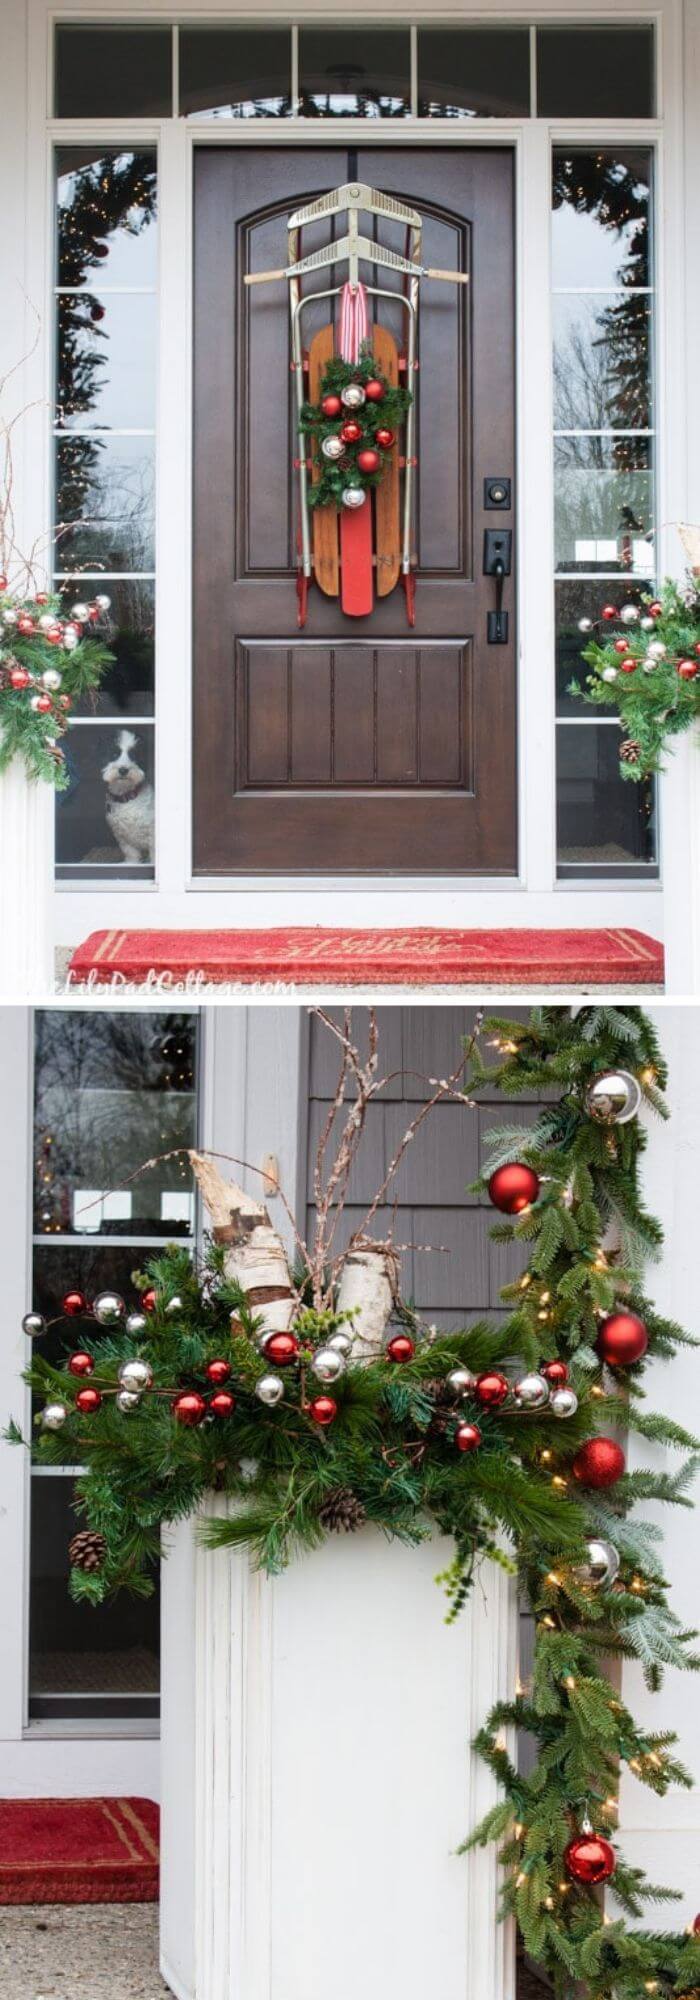 3 christmas front door decorations